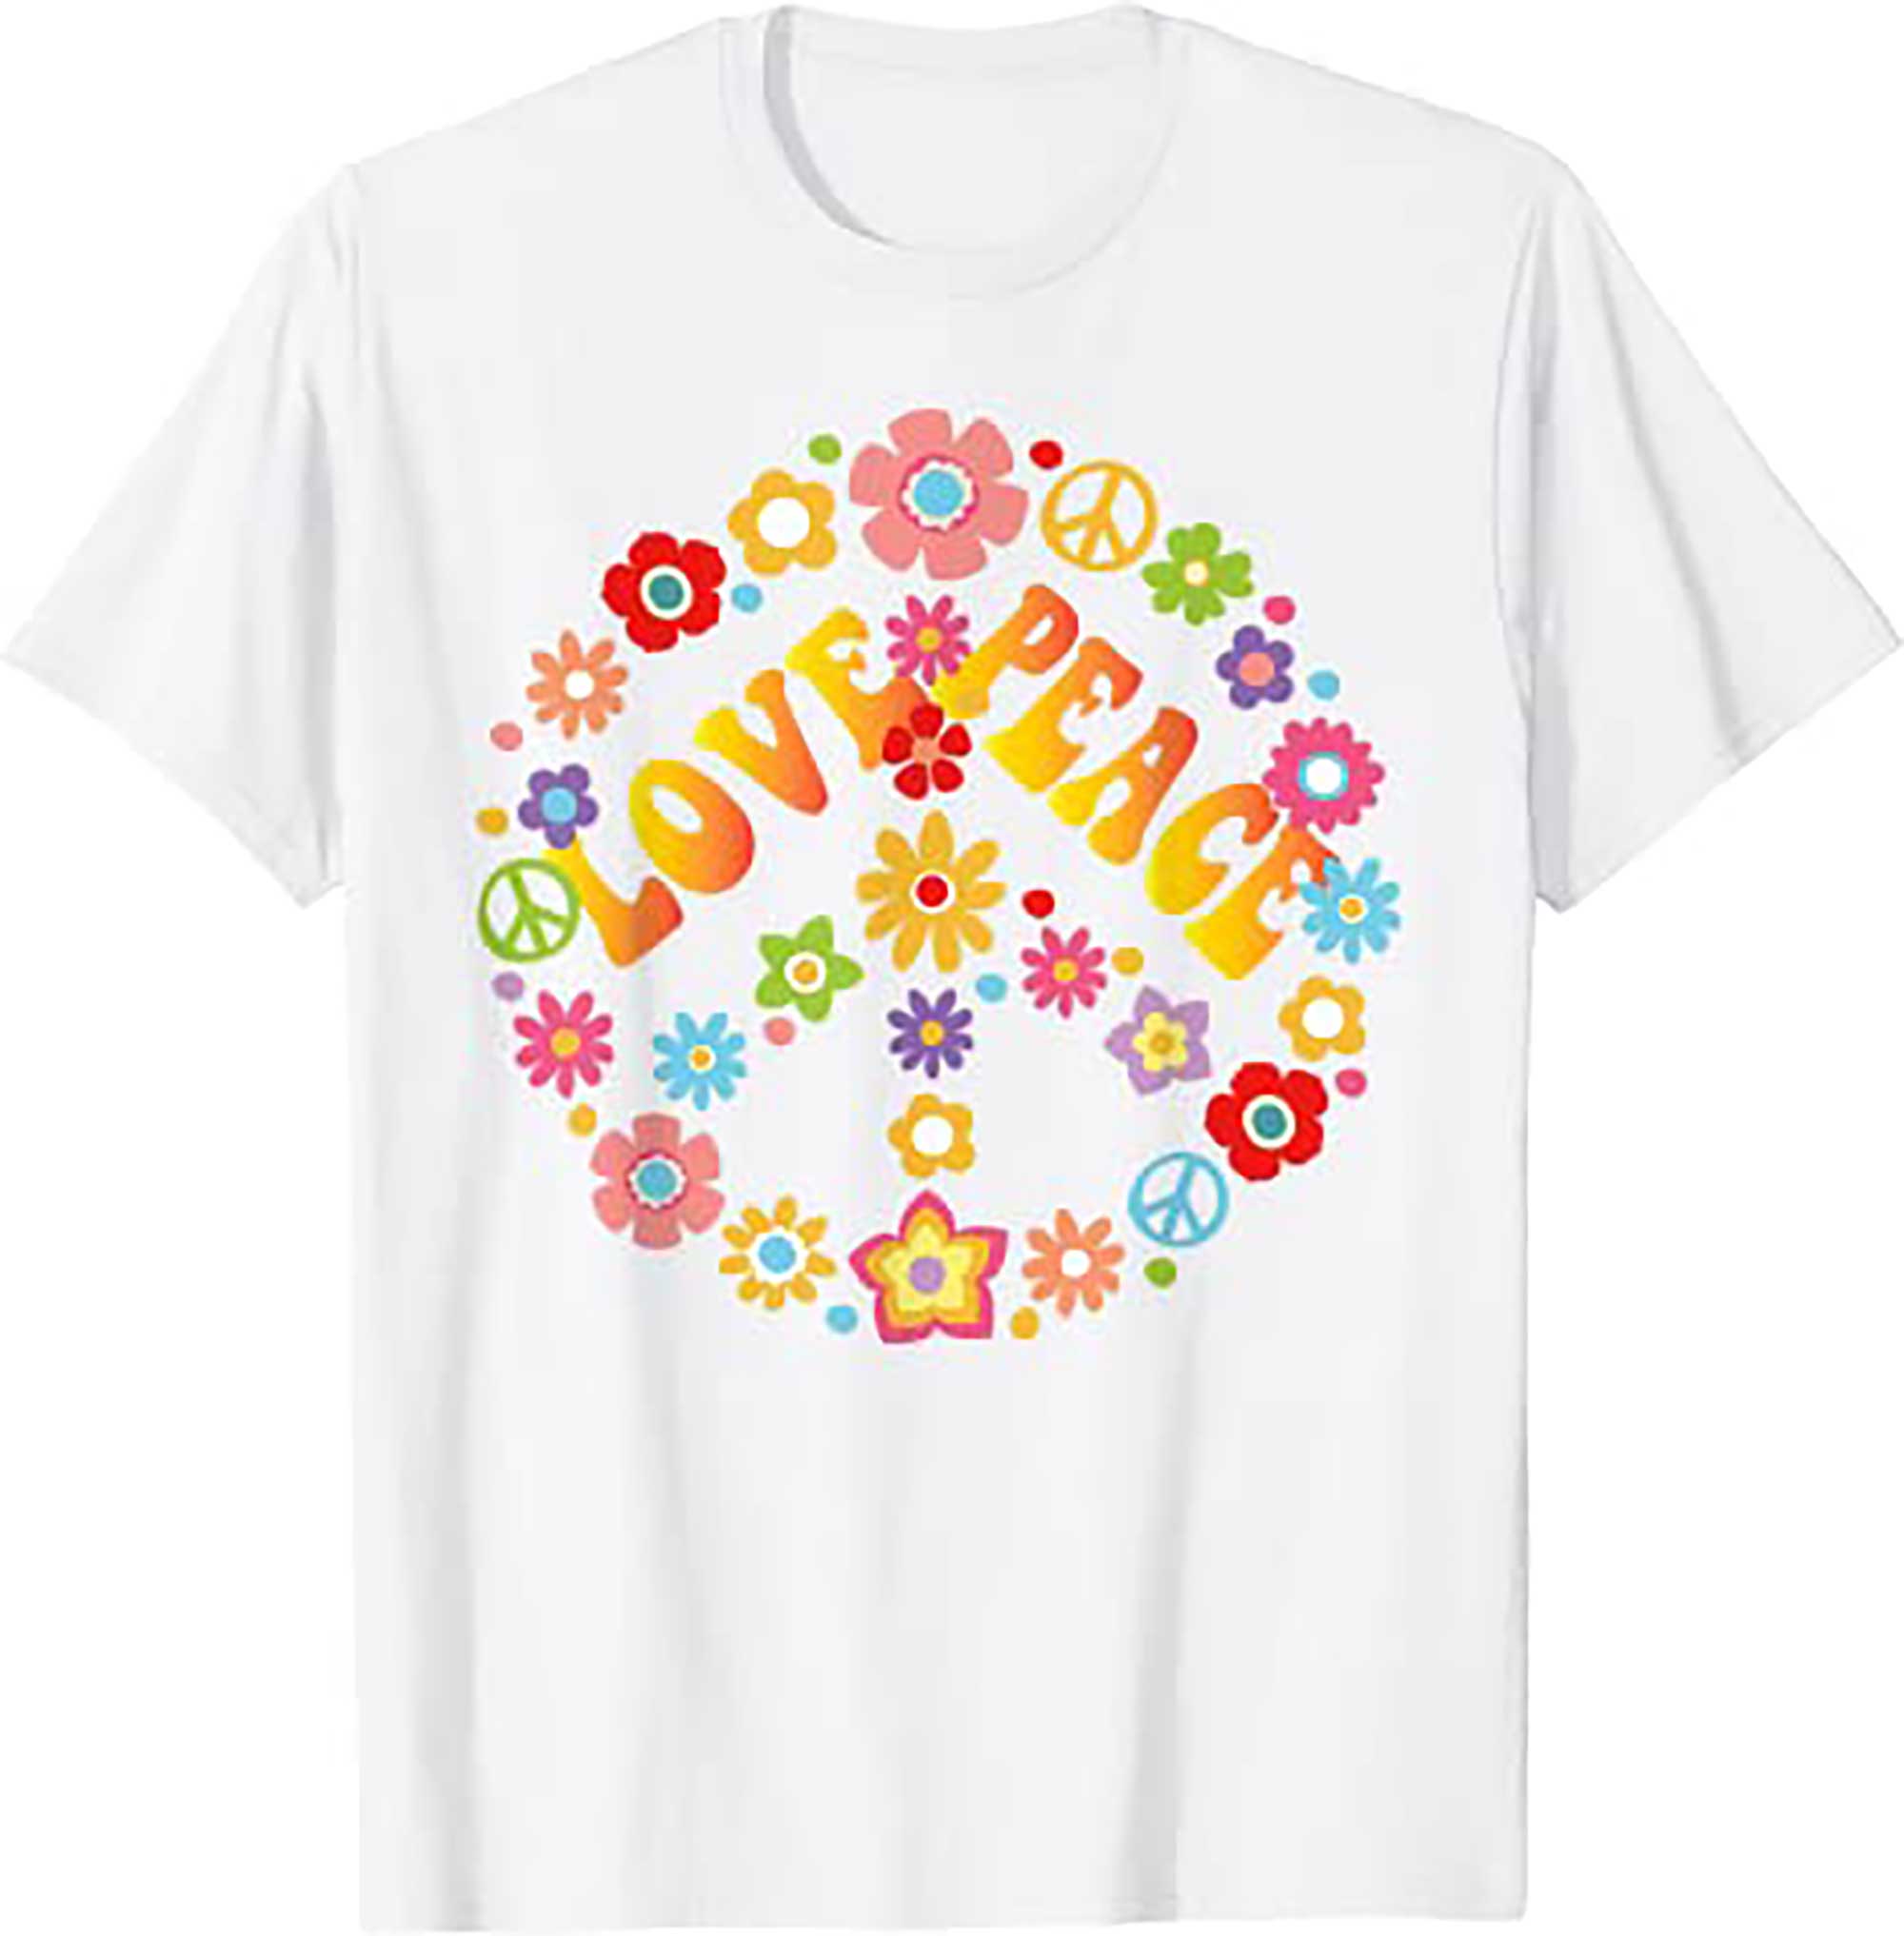 Skitongift PEACE SIGN LOVE T Shirt 60s 70s Tie Dye Hippie Costume Shirt T Shirt